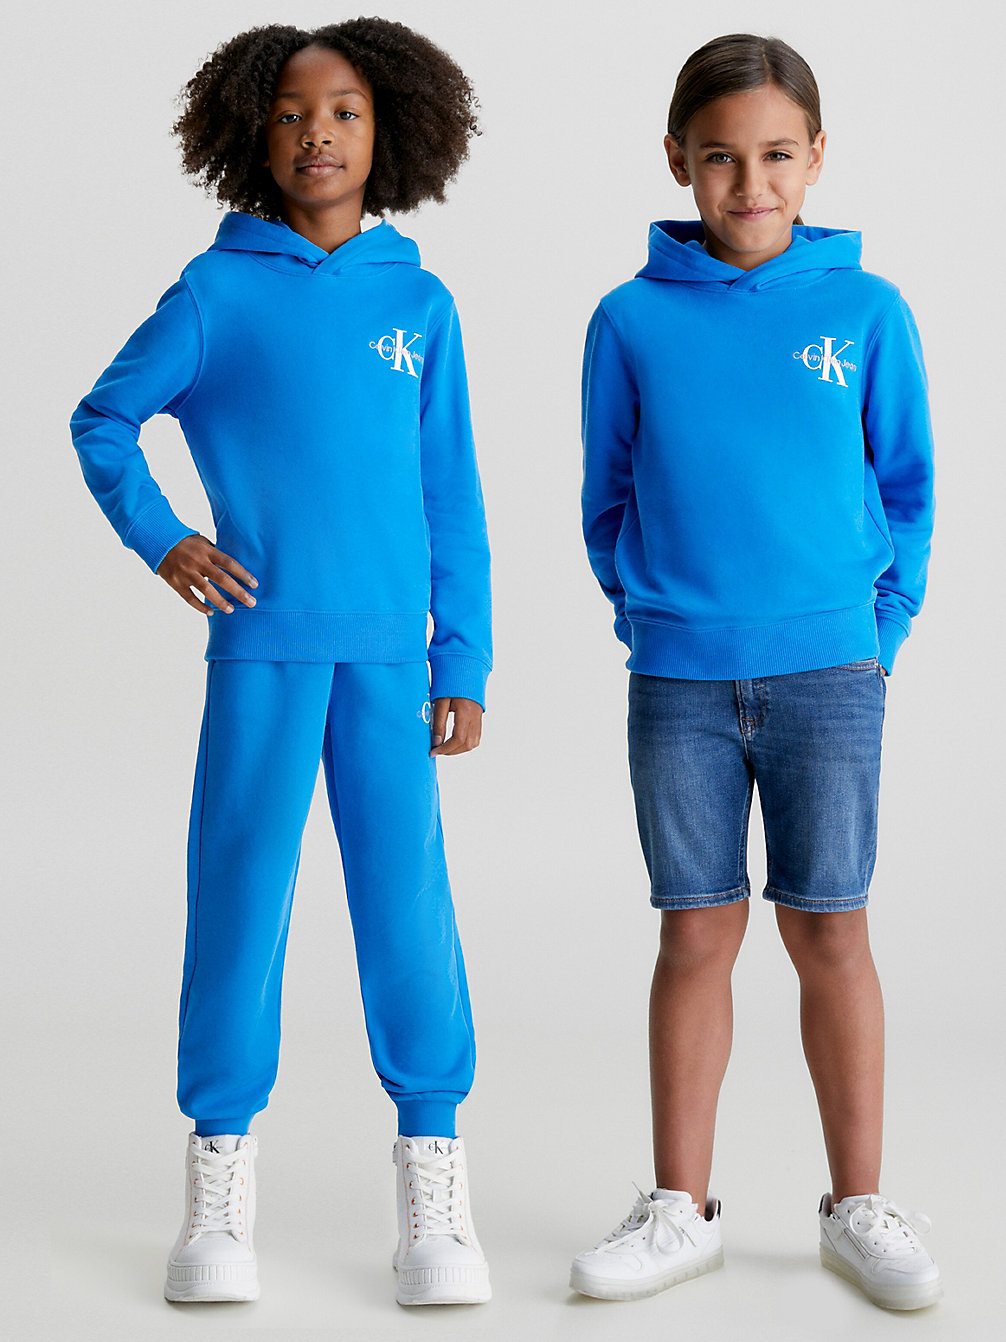 CORRIB RIVER BLUE Kids Organic Cotton Hoodie undefined kids unisex Calvin Klein